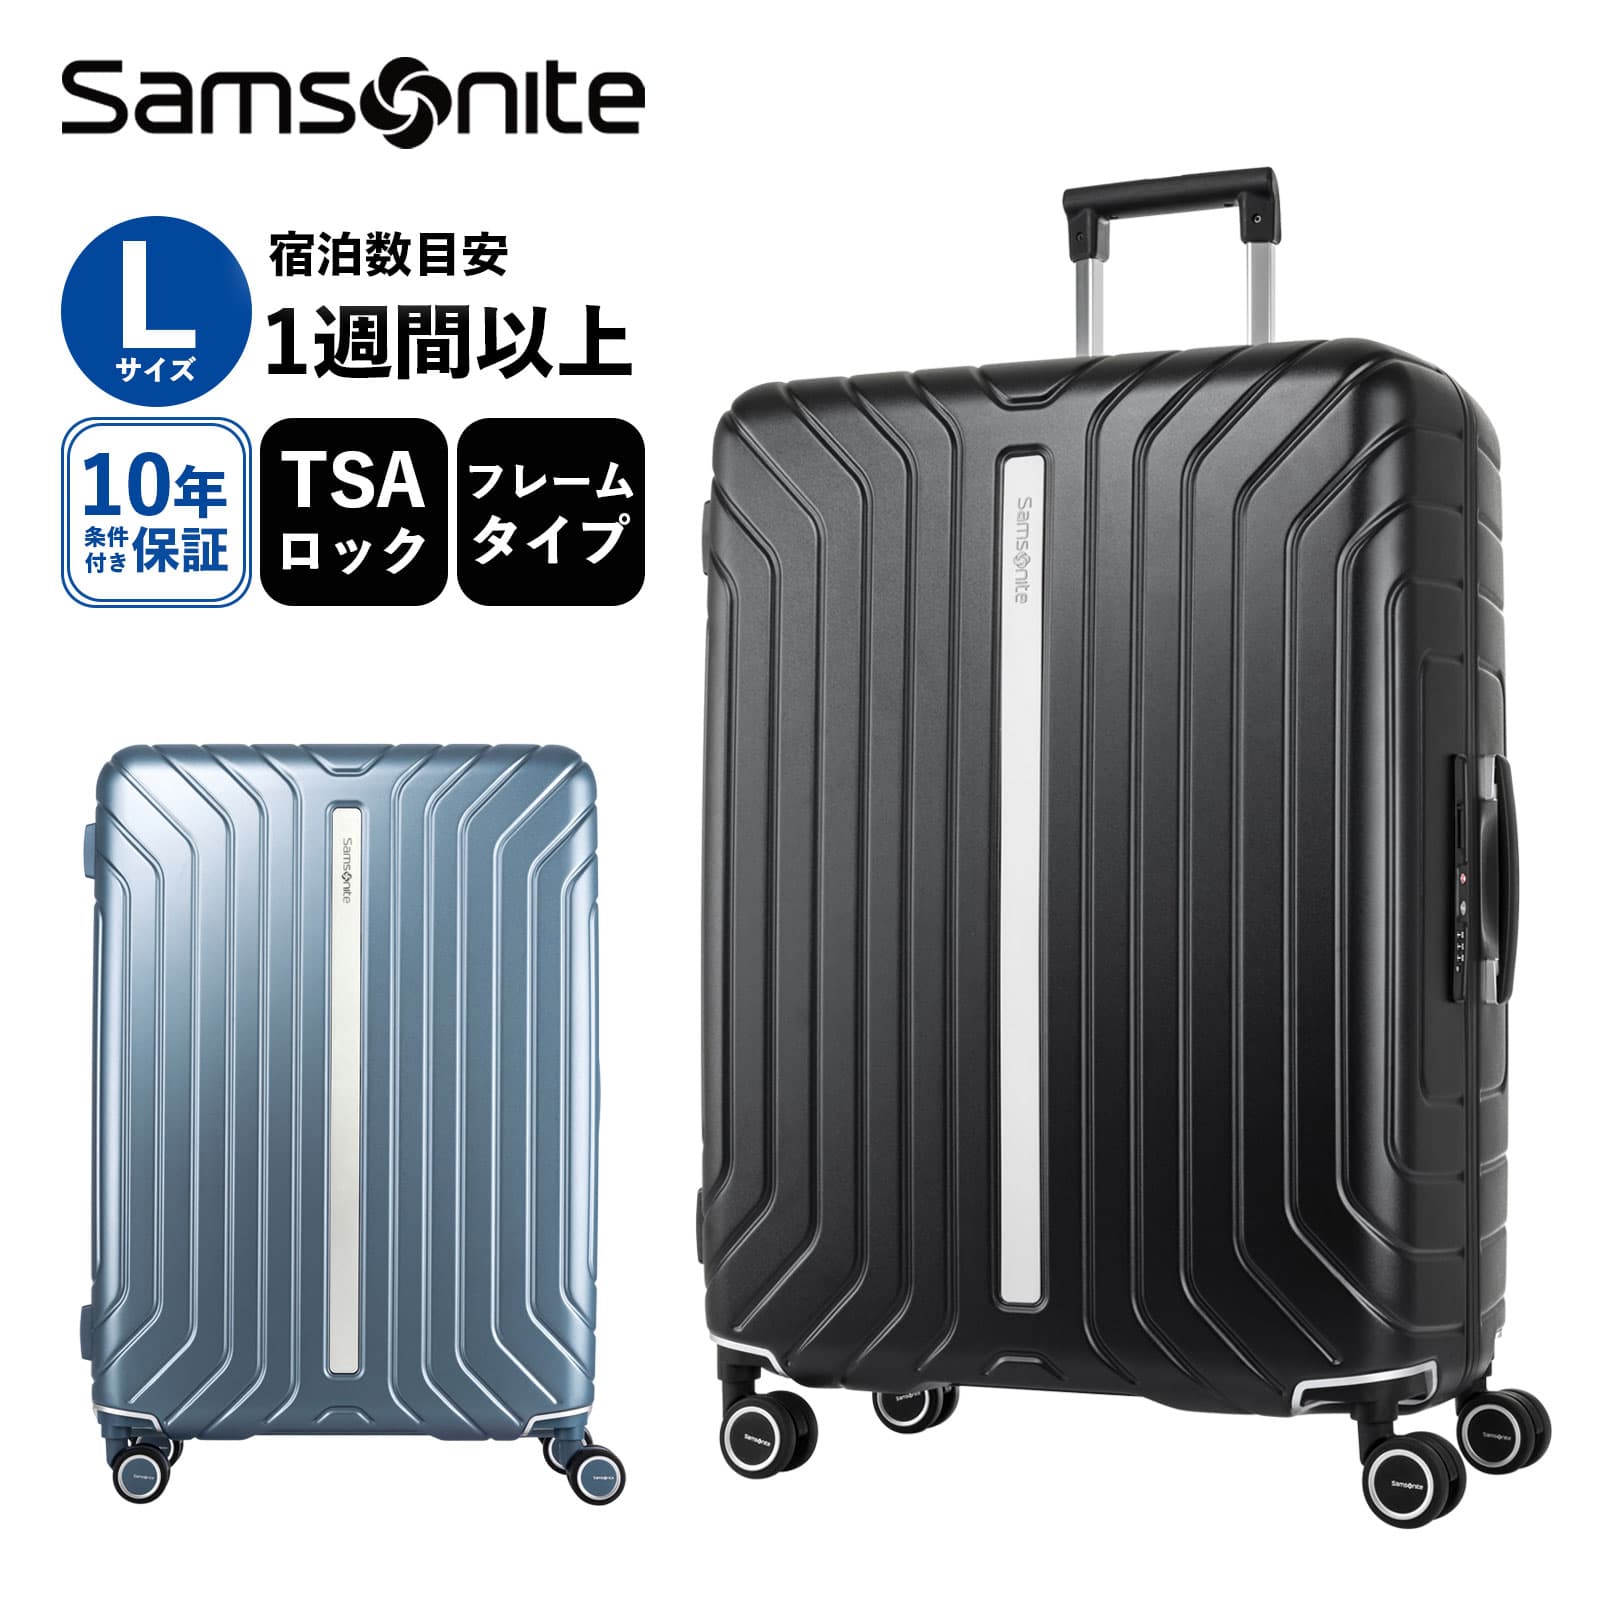 正規品 サムソナイト Samsonite スーツケース Lサイズ キャリーバッグ キャリーケース ライトフレーム LITE-FRAME SPINNER 75/28 ハードケース メンズ レディース 1週間以上 TSA 大容量 軽量 ブランド ブラック